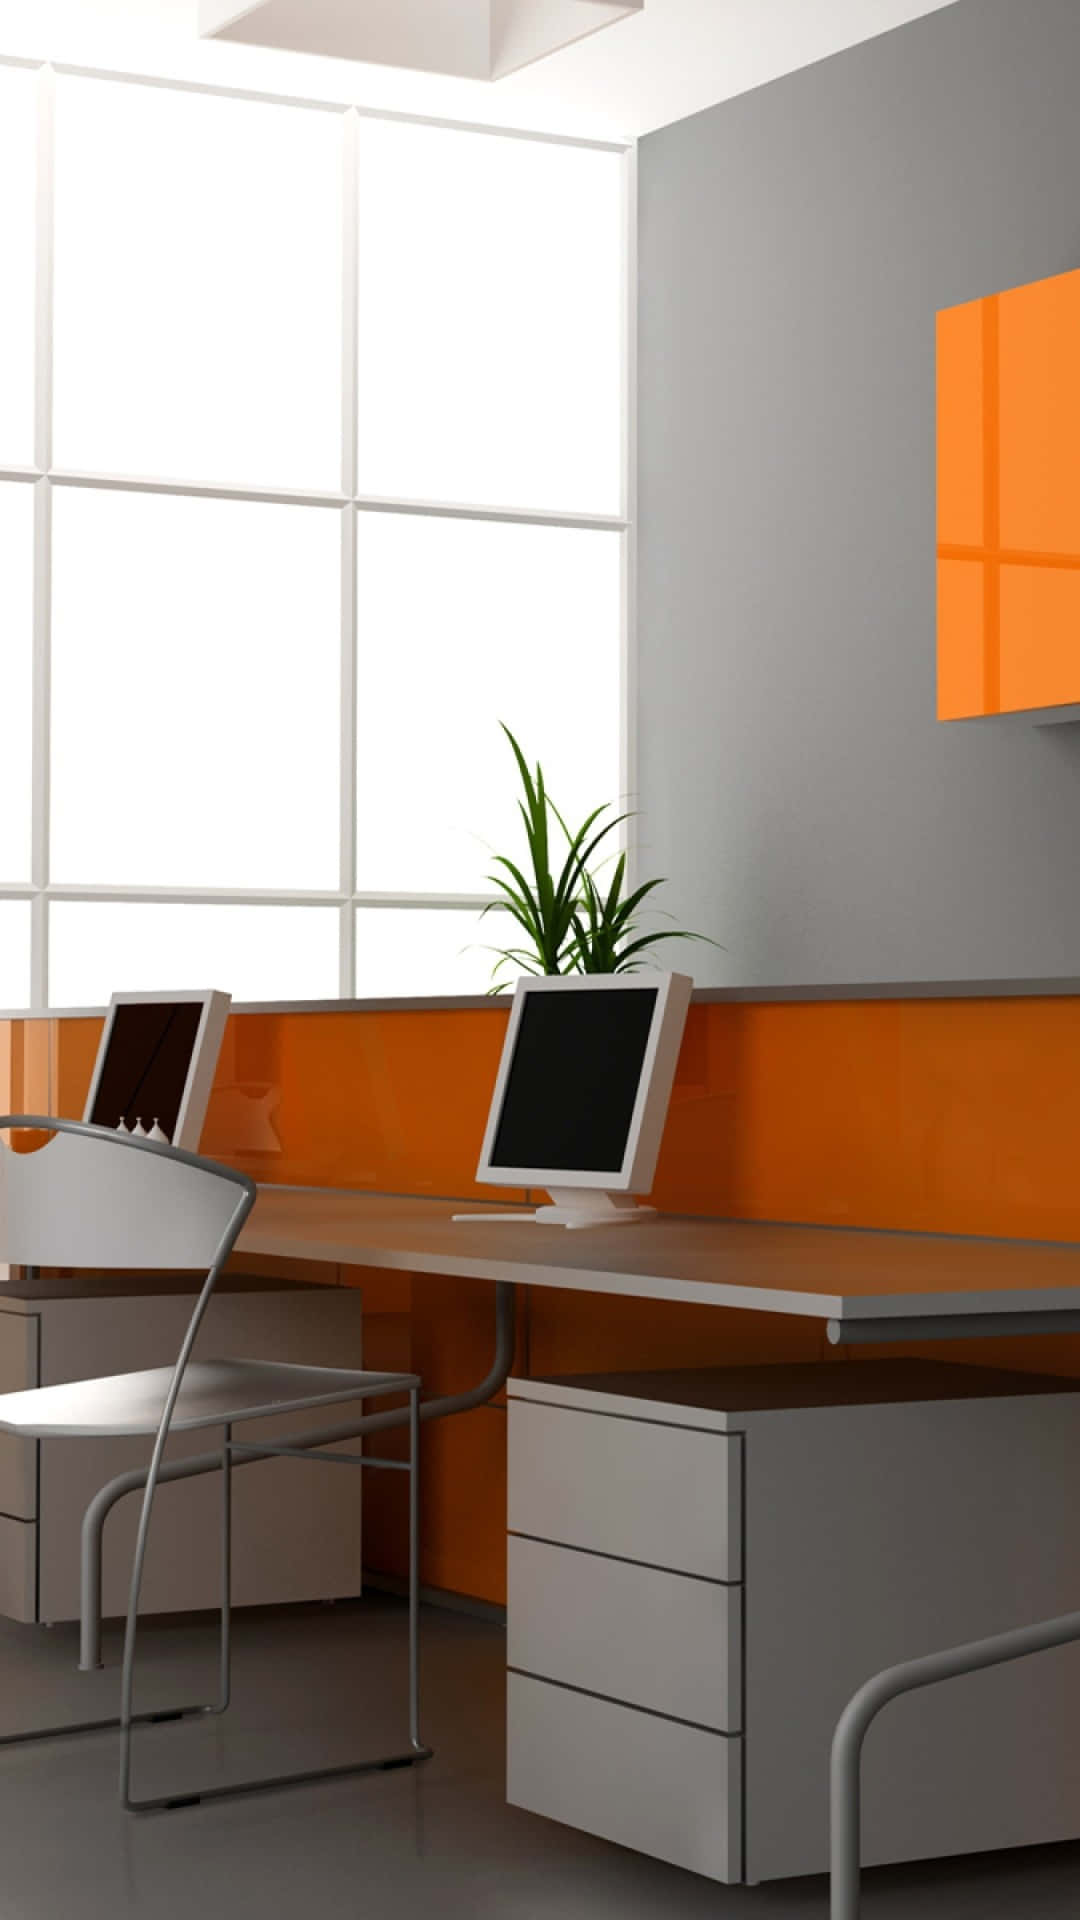 En orange og hvid kontor med et skrivebord og computer.